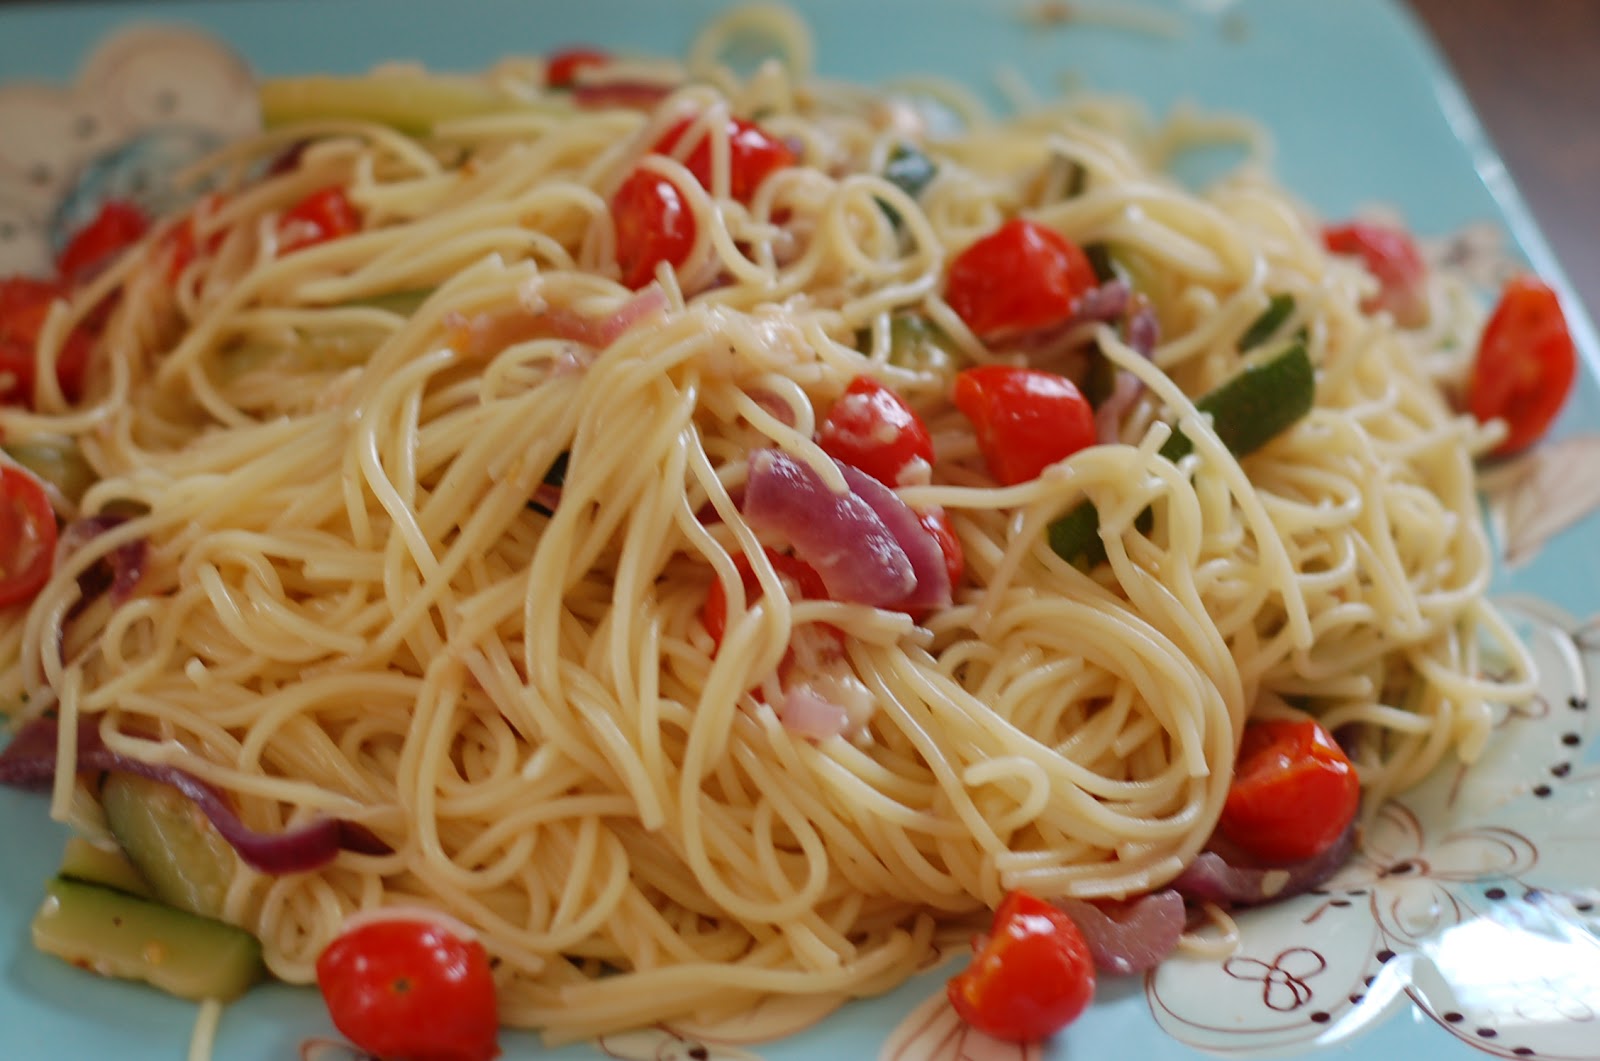 The Sparitarian: Tomato and Zucchini Linguine